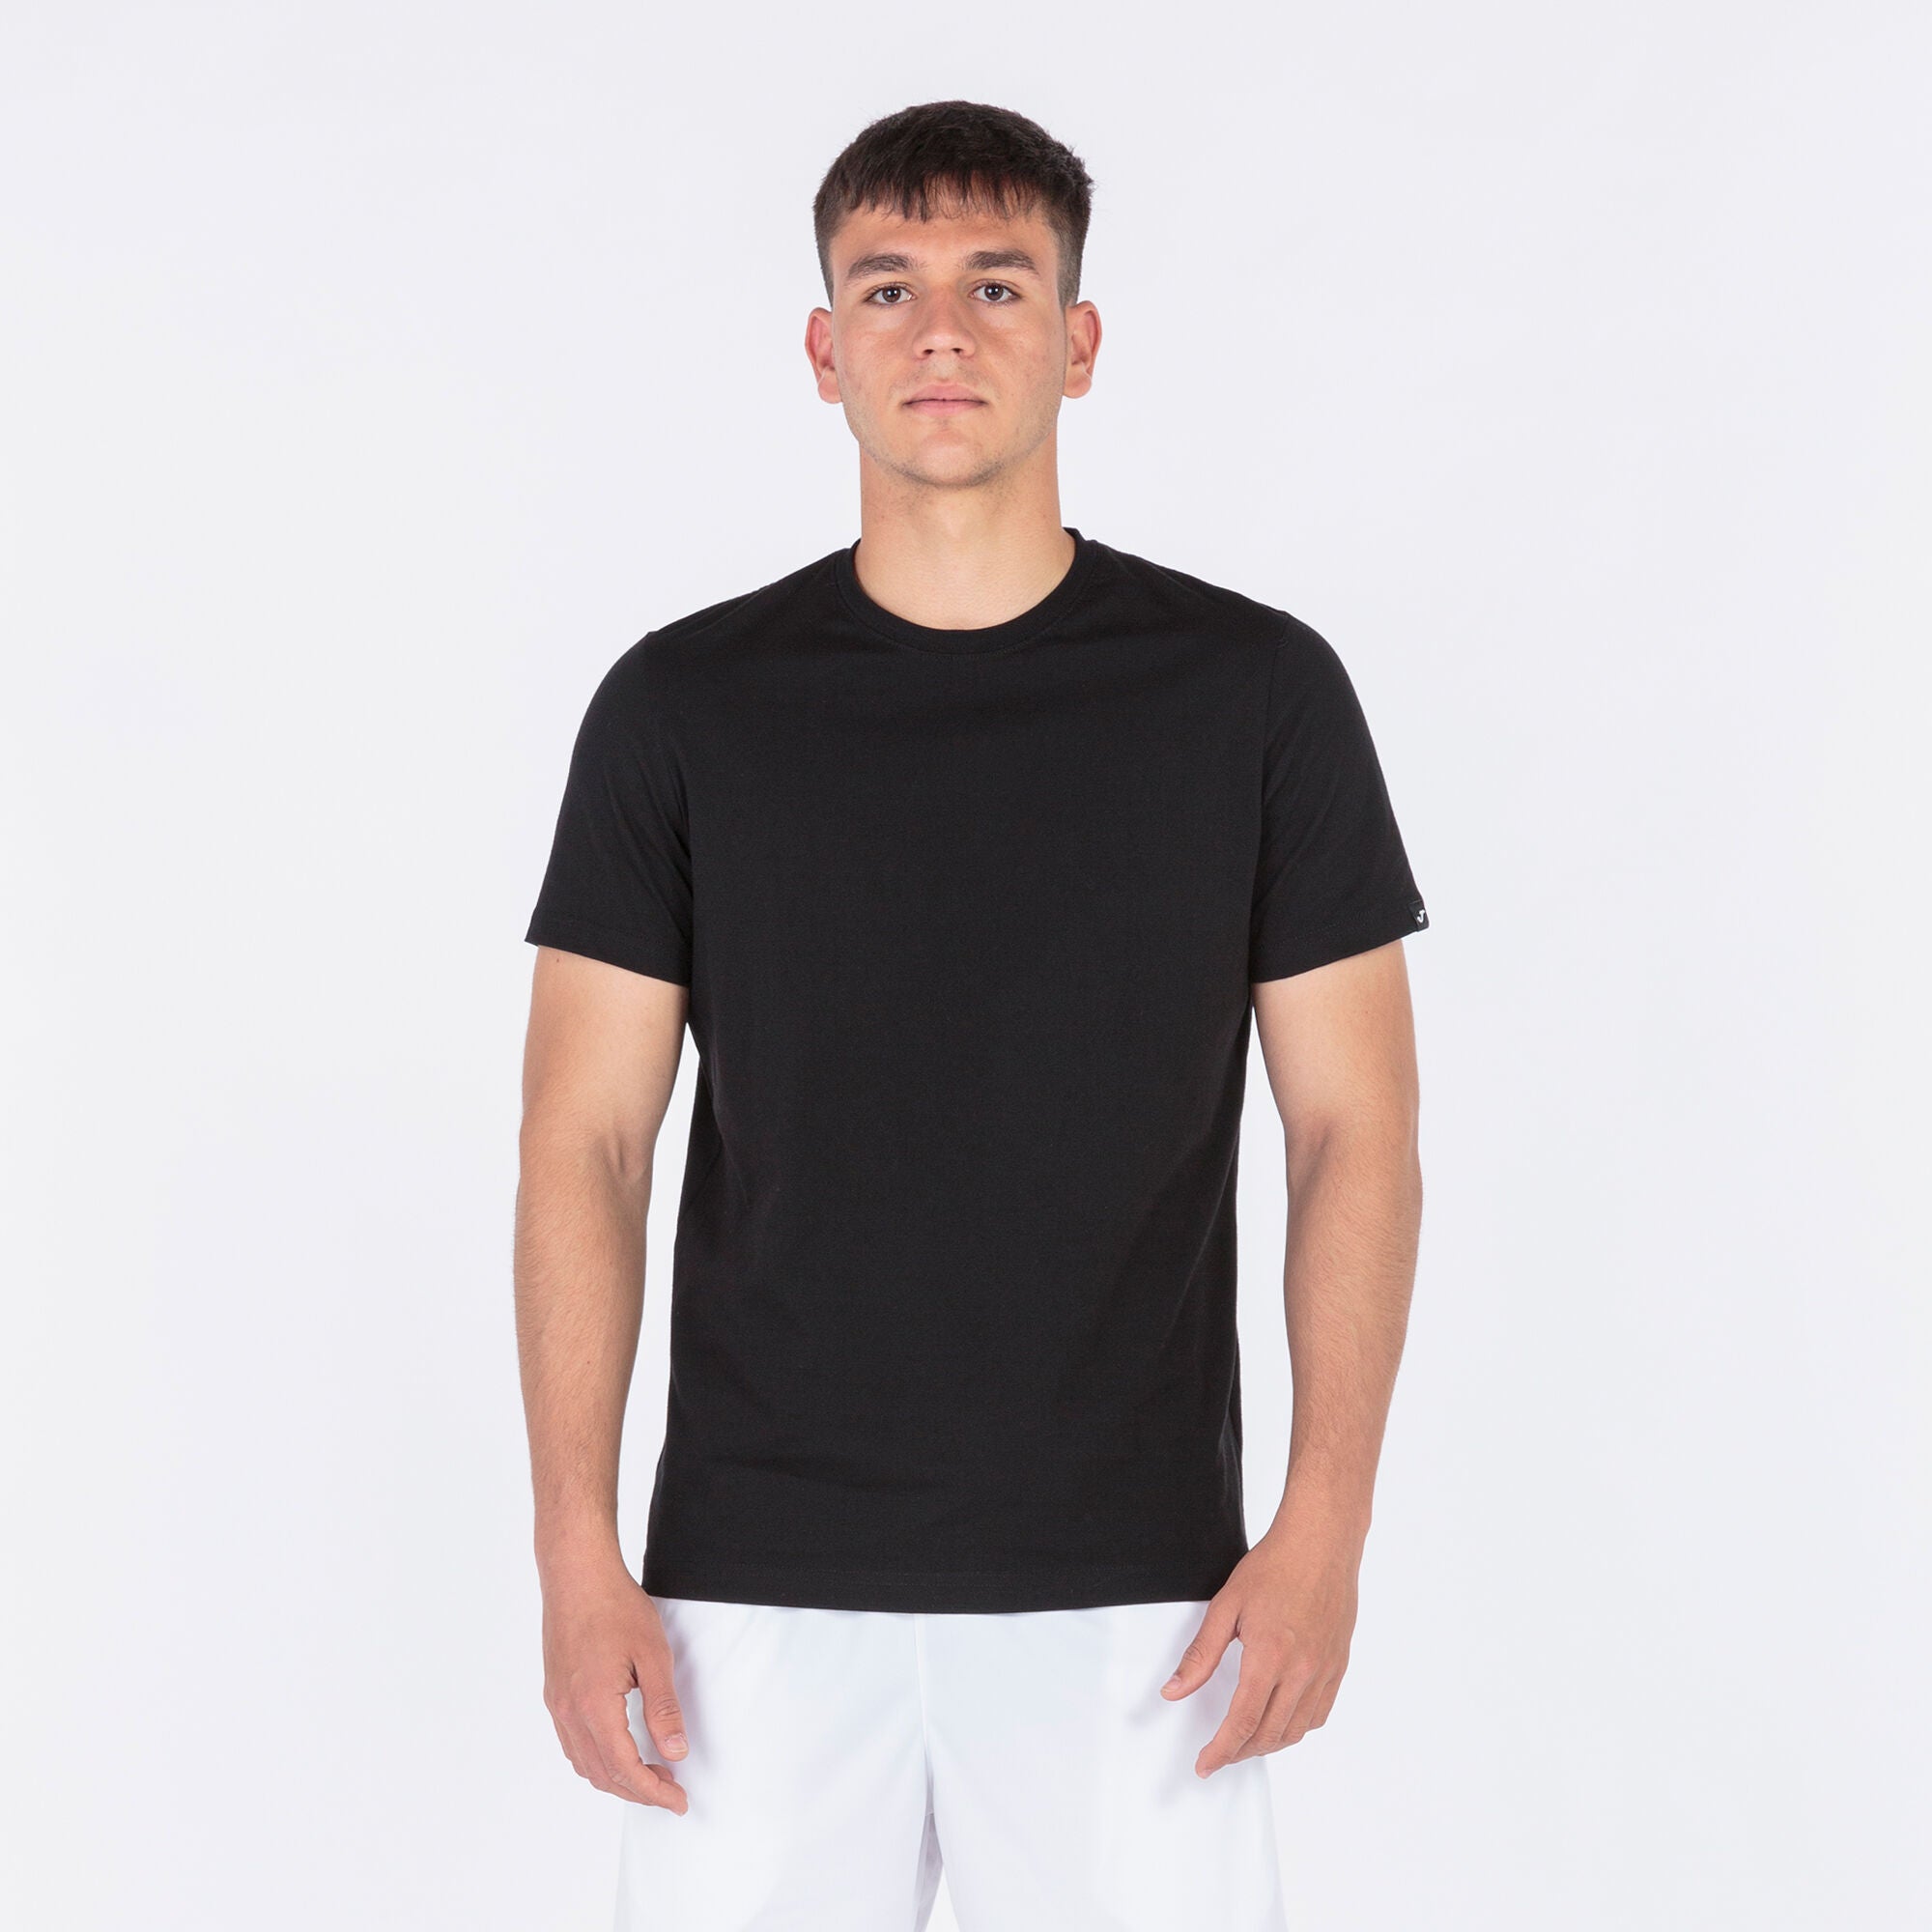 Joma Desert Plain Round Neck T-shirt Men's-2359-Black